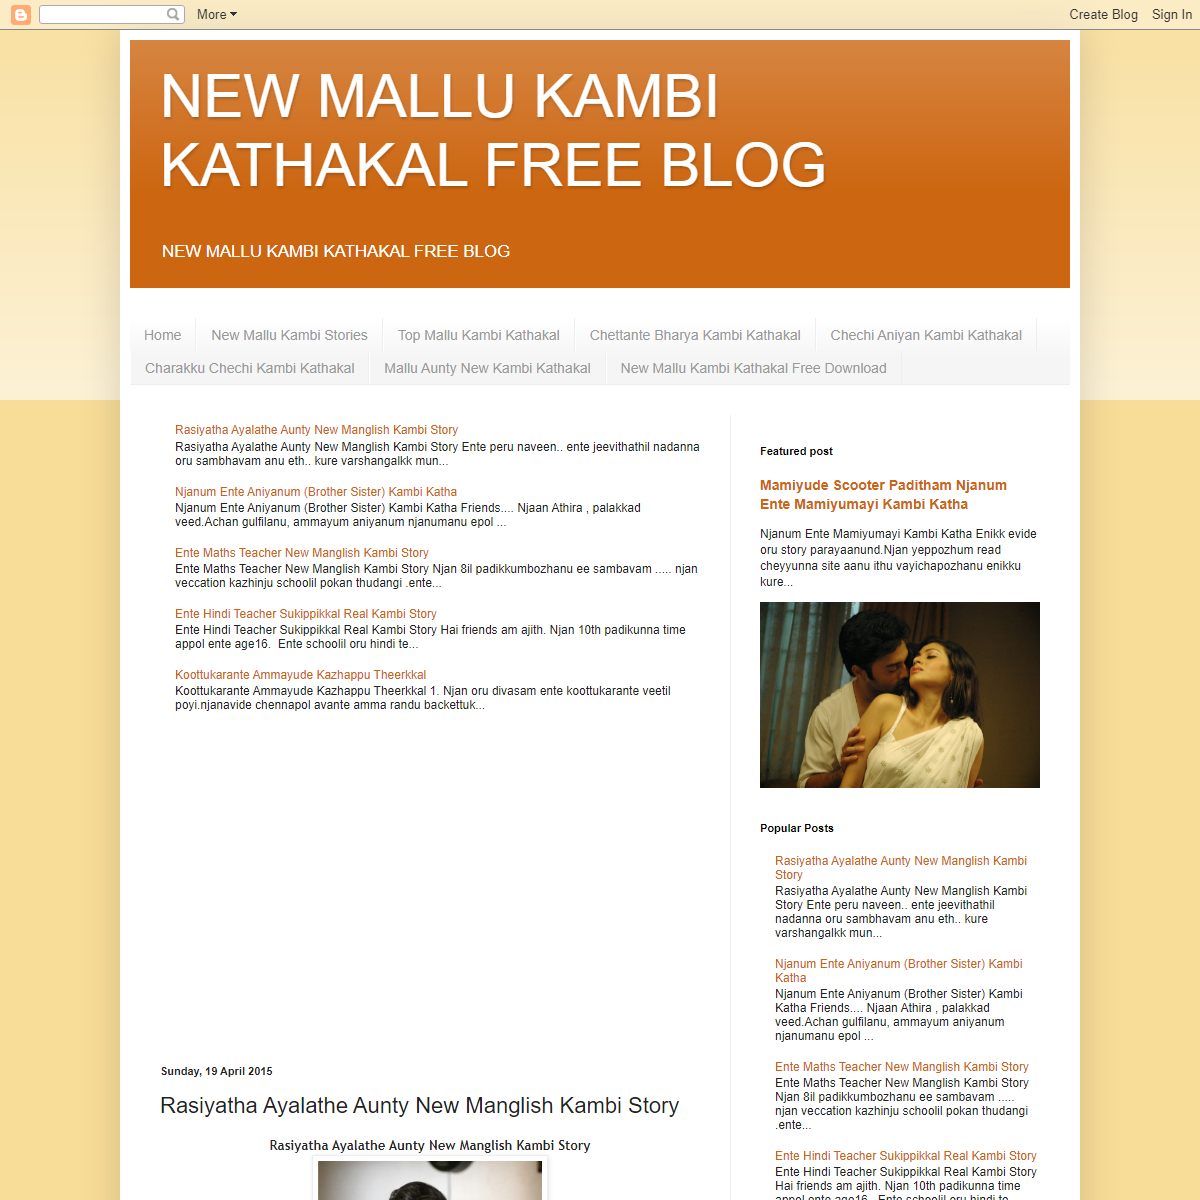 NEW MALLU KAMBI KATHAKAL FREE BLOG- Rasiyatha Ayalathe Aunty New Manglish Kambi Story